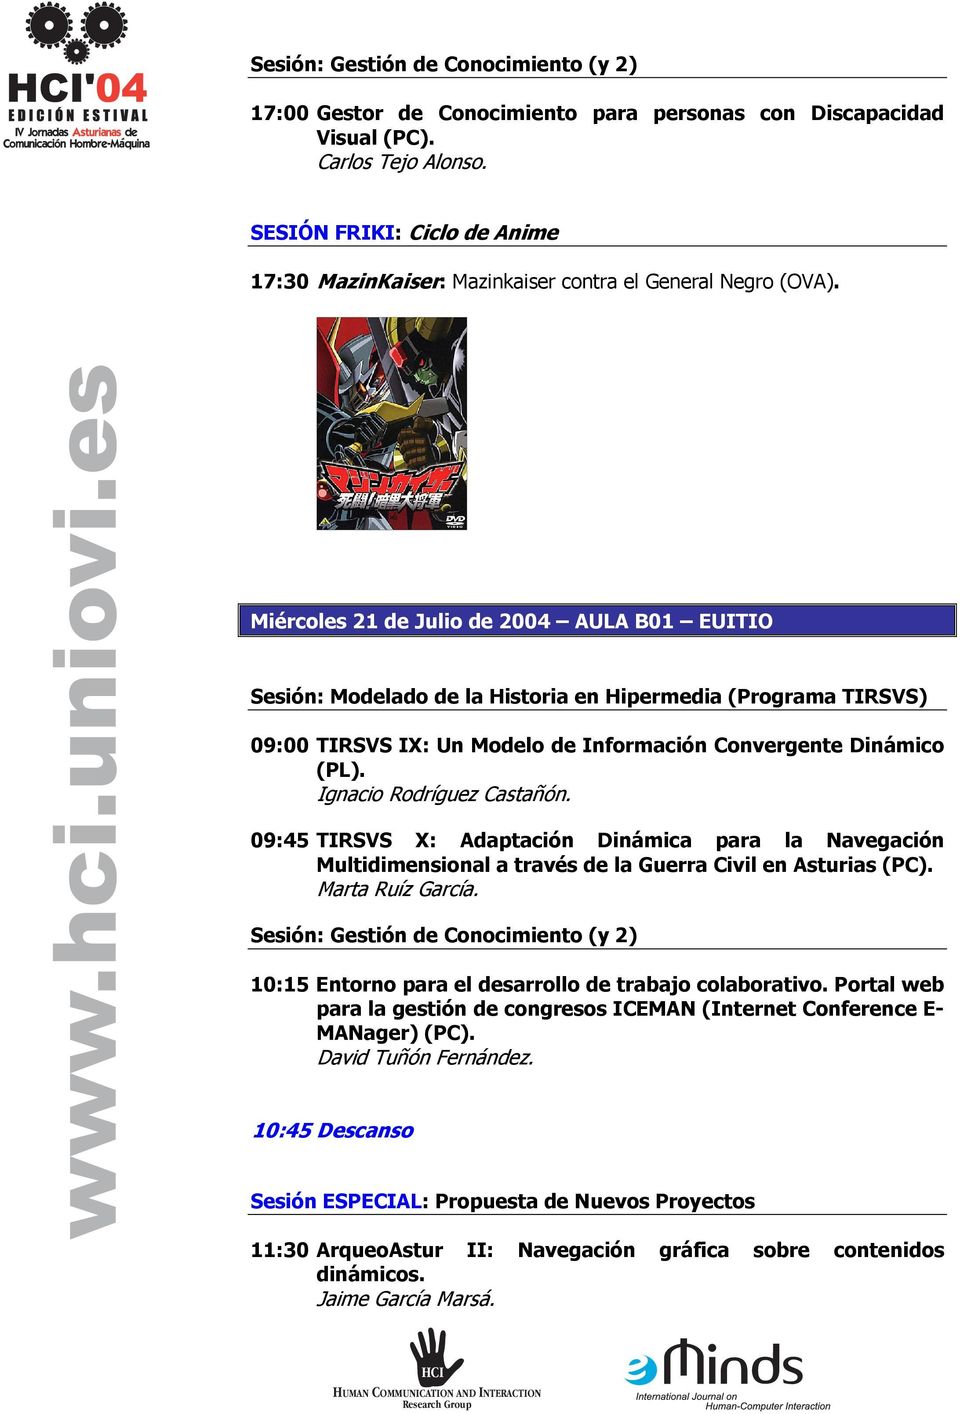 Miércoles 21 de Julio de 2004 AULA B01 EUITIO Sesión: Modelado de la Historia en Hipermedia (Programa TIRSVS) 09:00 TIRSVS IX: Un Modelo de Información Convergente Dinámico (PL).